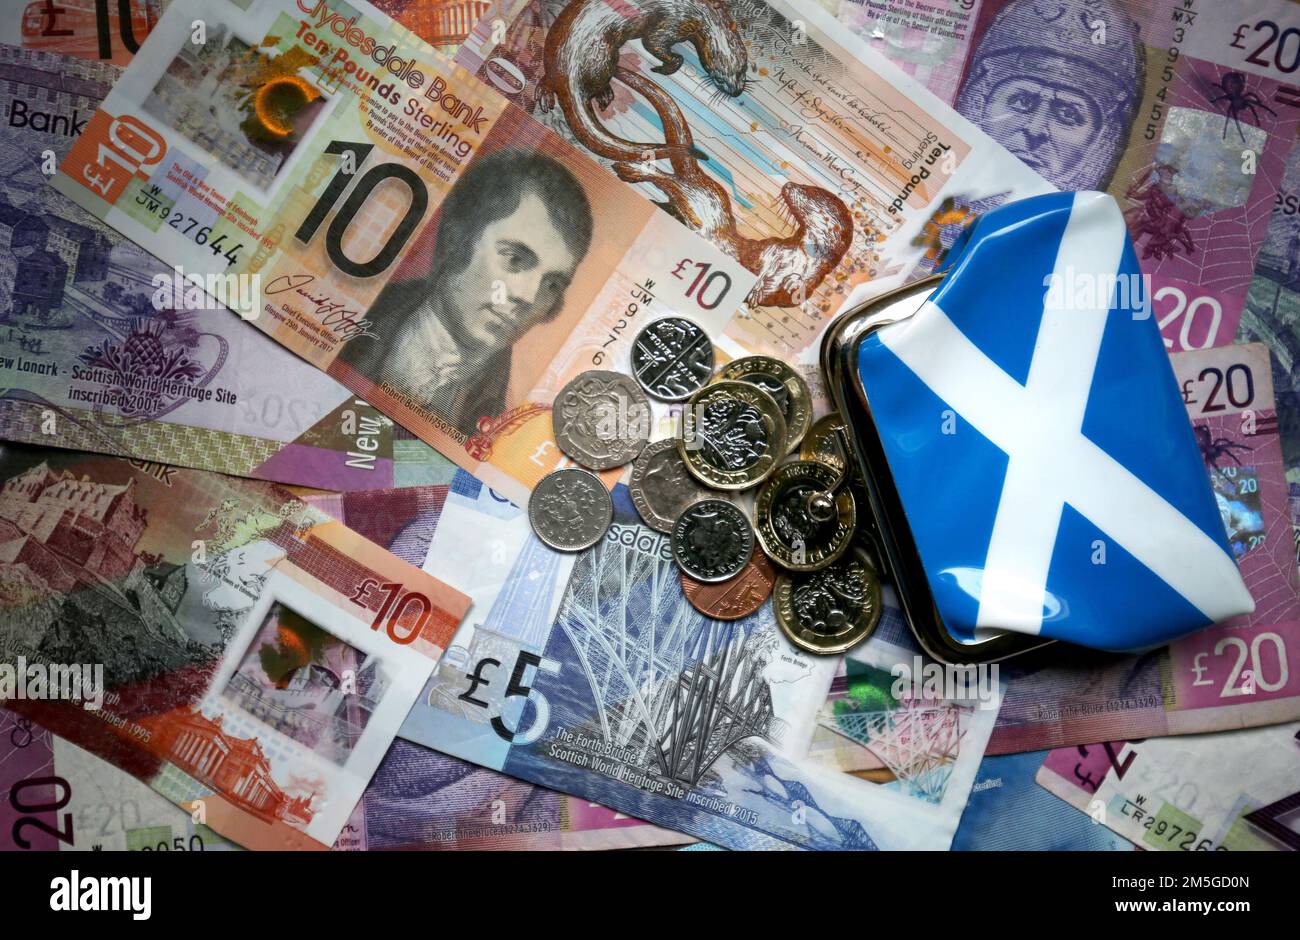 Photo du dossier datée du 09/04/18 de pièces de monnaie et de billets de banque écossais, car les personnes qui luttent avec leurs finances ont été conseillées par le secrétaire de justice sociale de l'Écosse de demander de l'aide. Banque D'Images